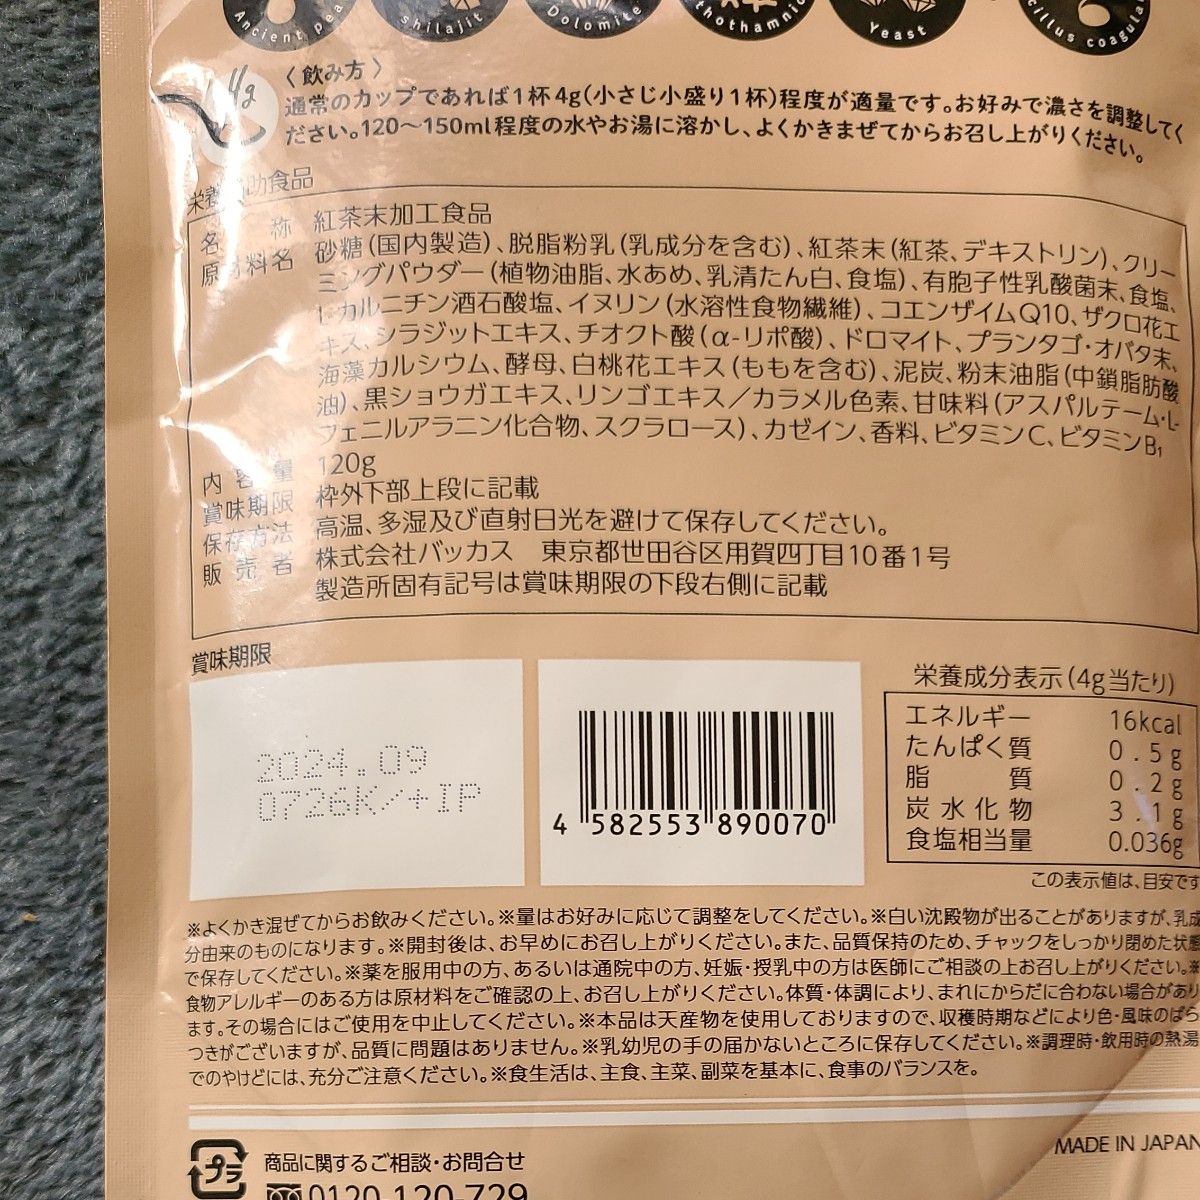 バッカス Oi tea ダイエットミルクティー 粉末 120g３袋セット